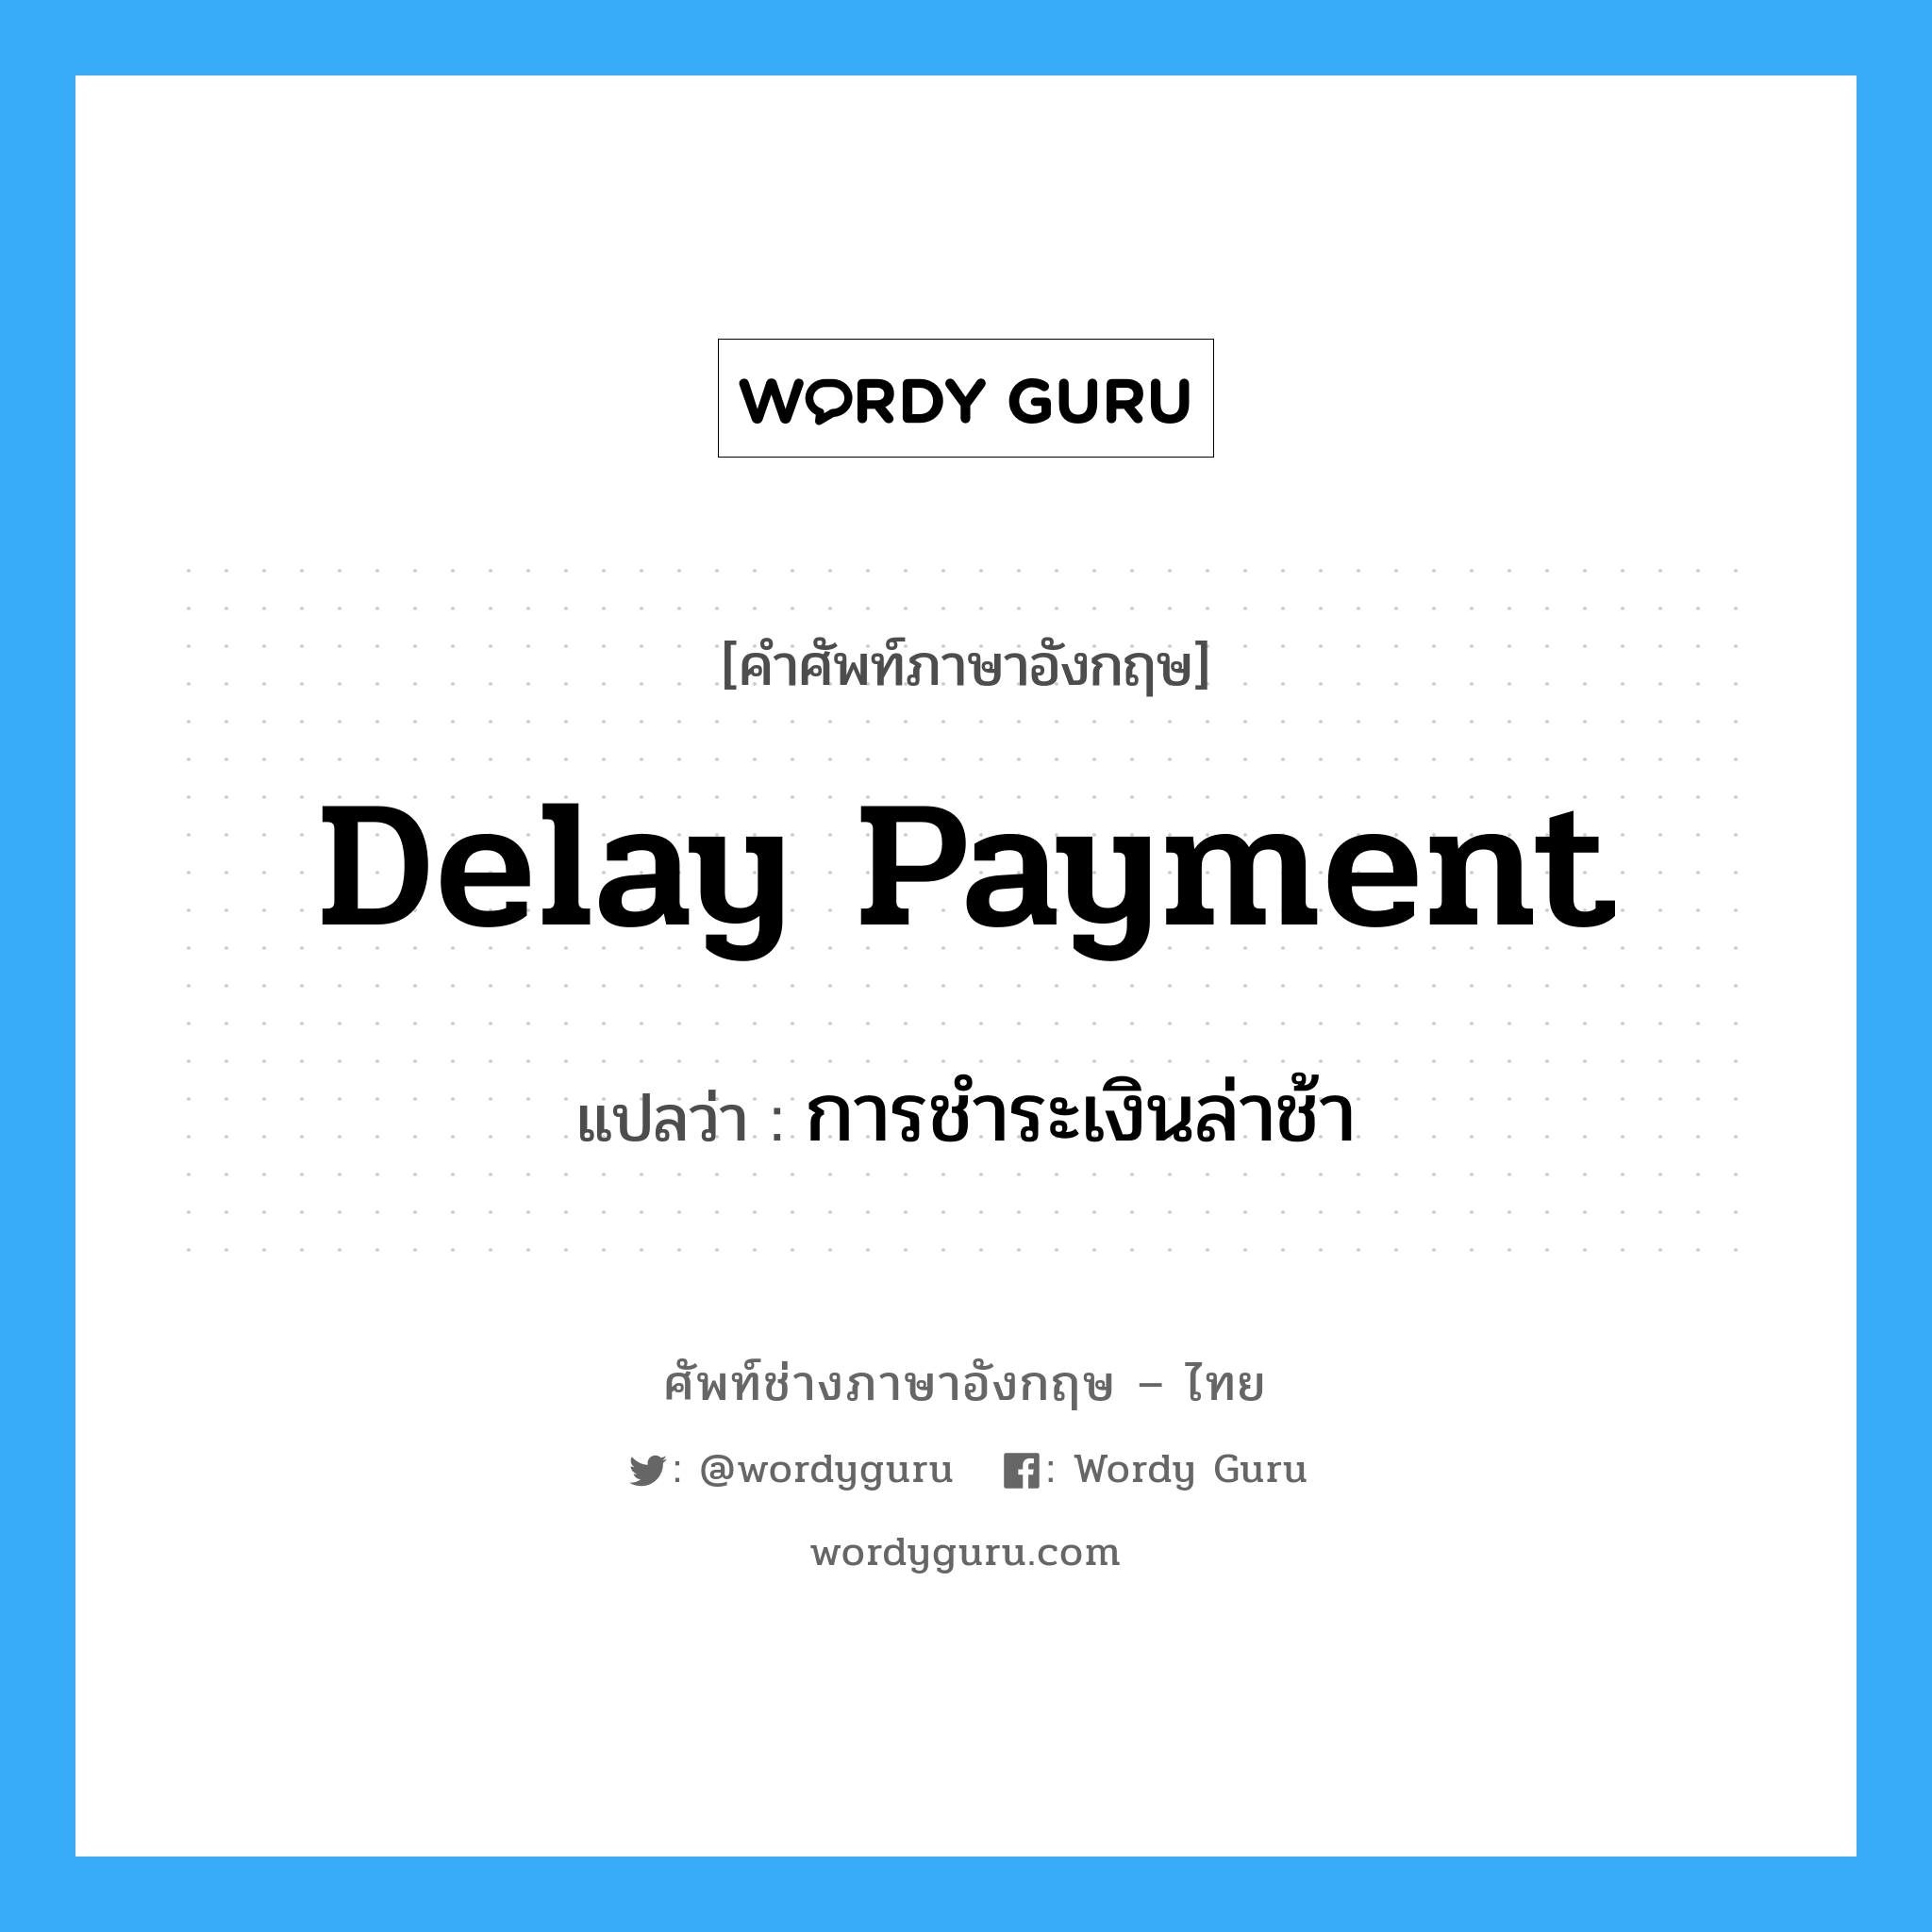 delay payment แปลว่า?, คำศัพท์ช่างภาษาอังกฤษ - ไทย delay payment คำศัพท์ภาษาอังกฤษ delay payment แปลว่า การชำระเงินล่าช้า